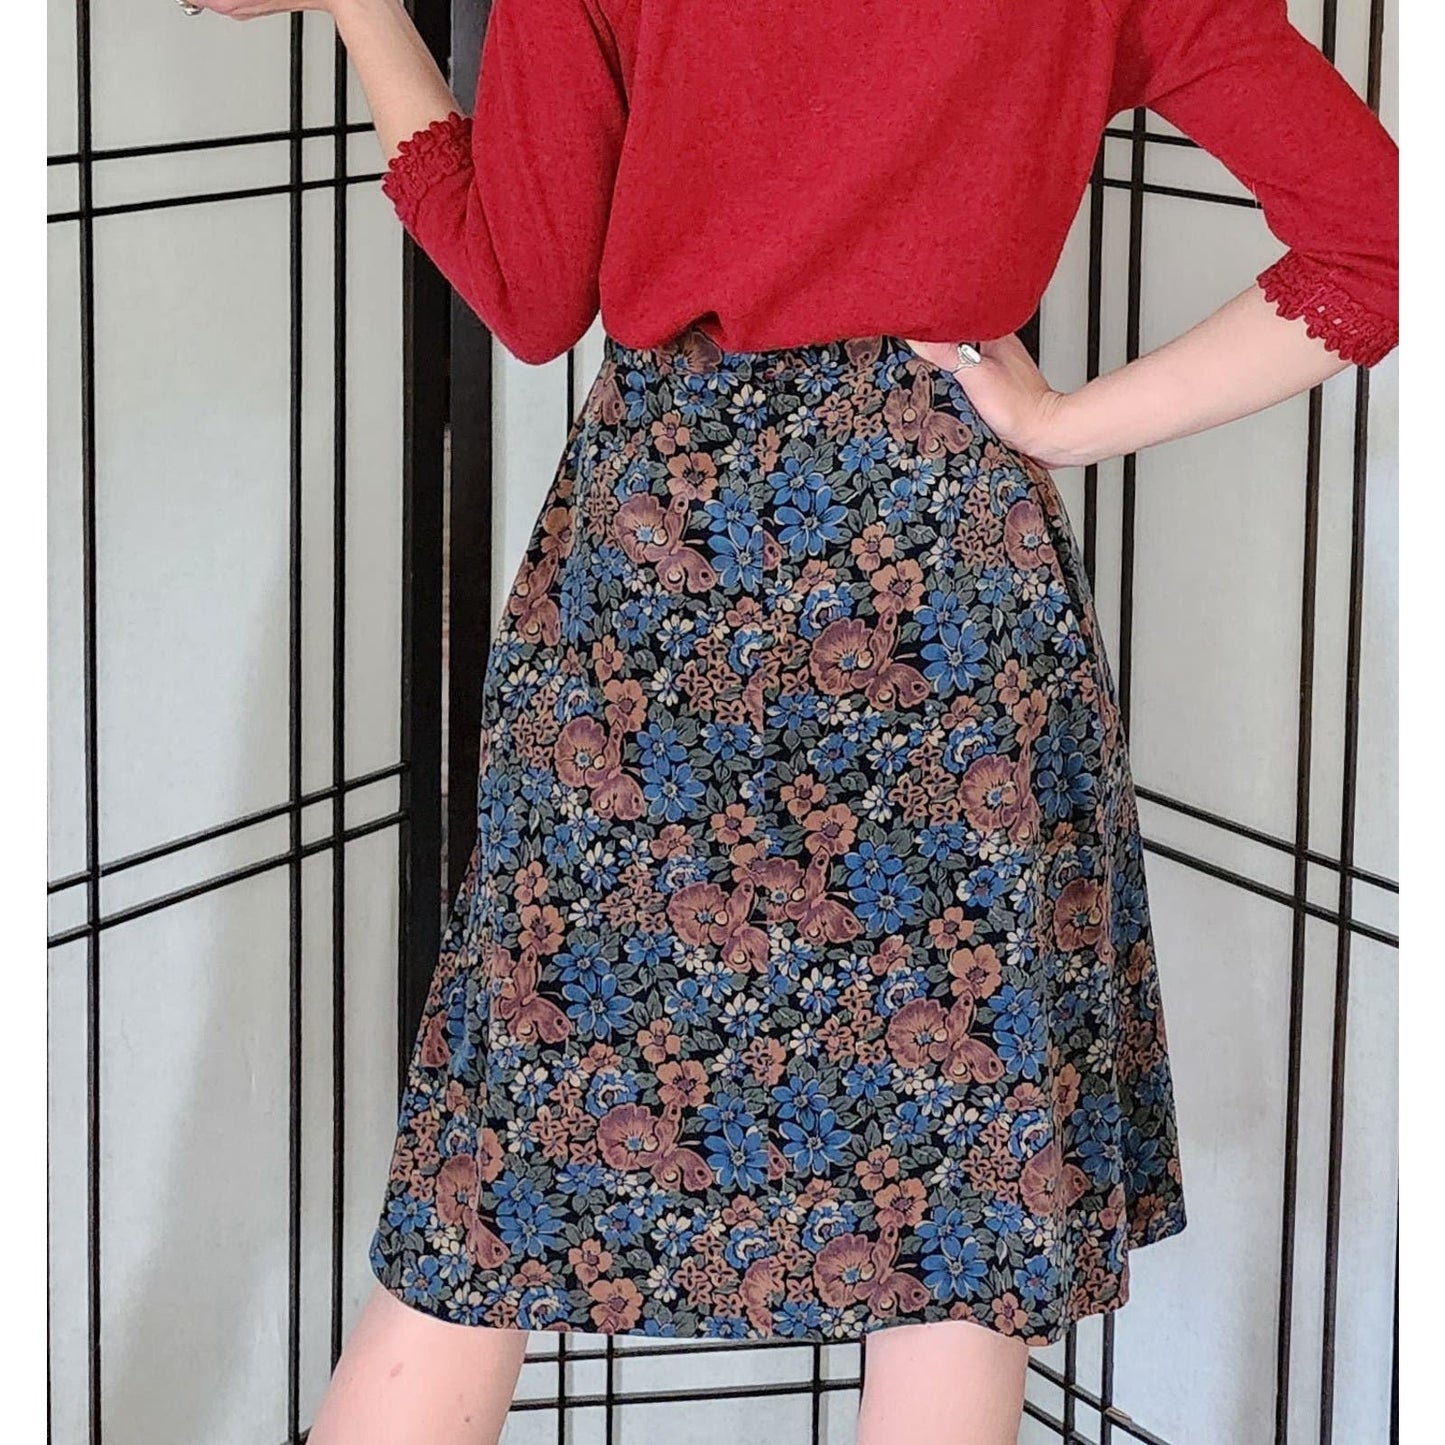 Vintage 70s Corduroy Skirt Floral Print Brown Blue